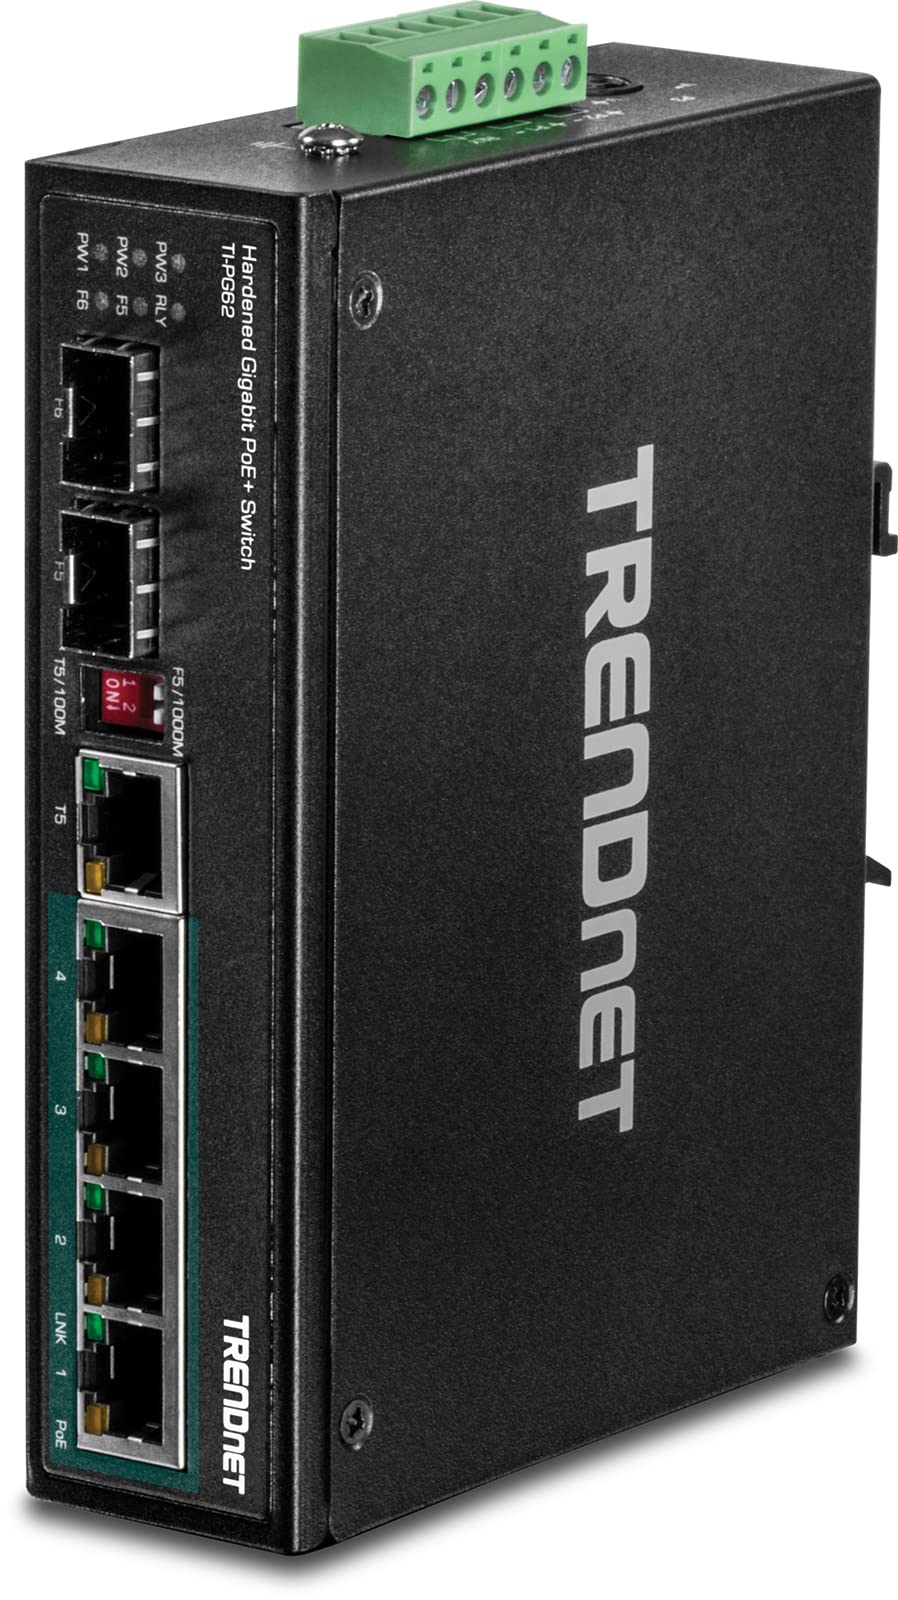 TRENDnet TI-PG62 6-Port-gehärteter industrieller Gigabit-PoE + -Din-Rail-Switch, 4 x Gigabit-PoE + -Ports, 1 x gemeinsamer Gigabit-Port (RJ-45 / SFP), 1 x dedizierter SFP, 120-W-Leistungsbudget, IP30